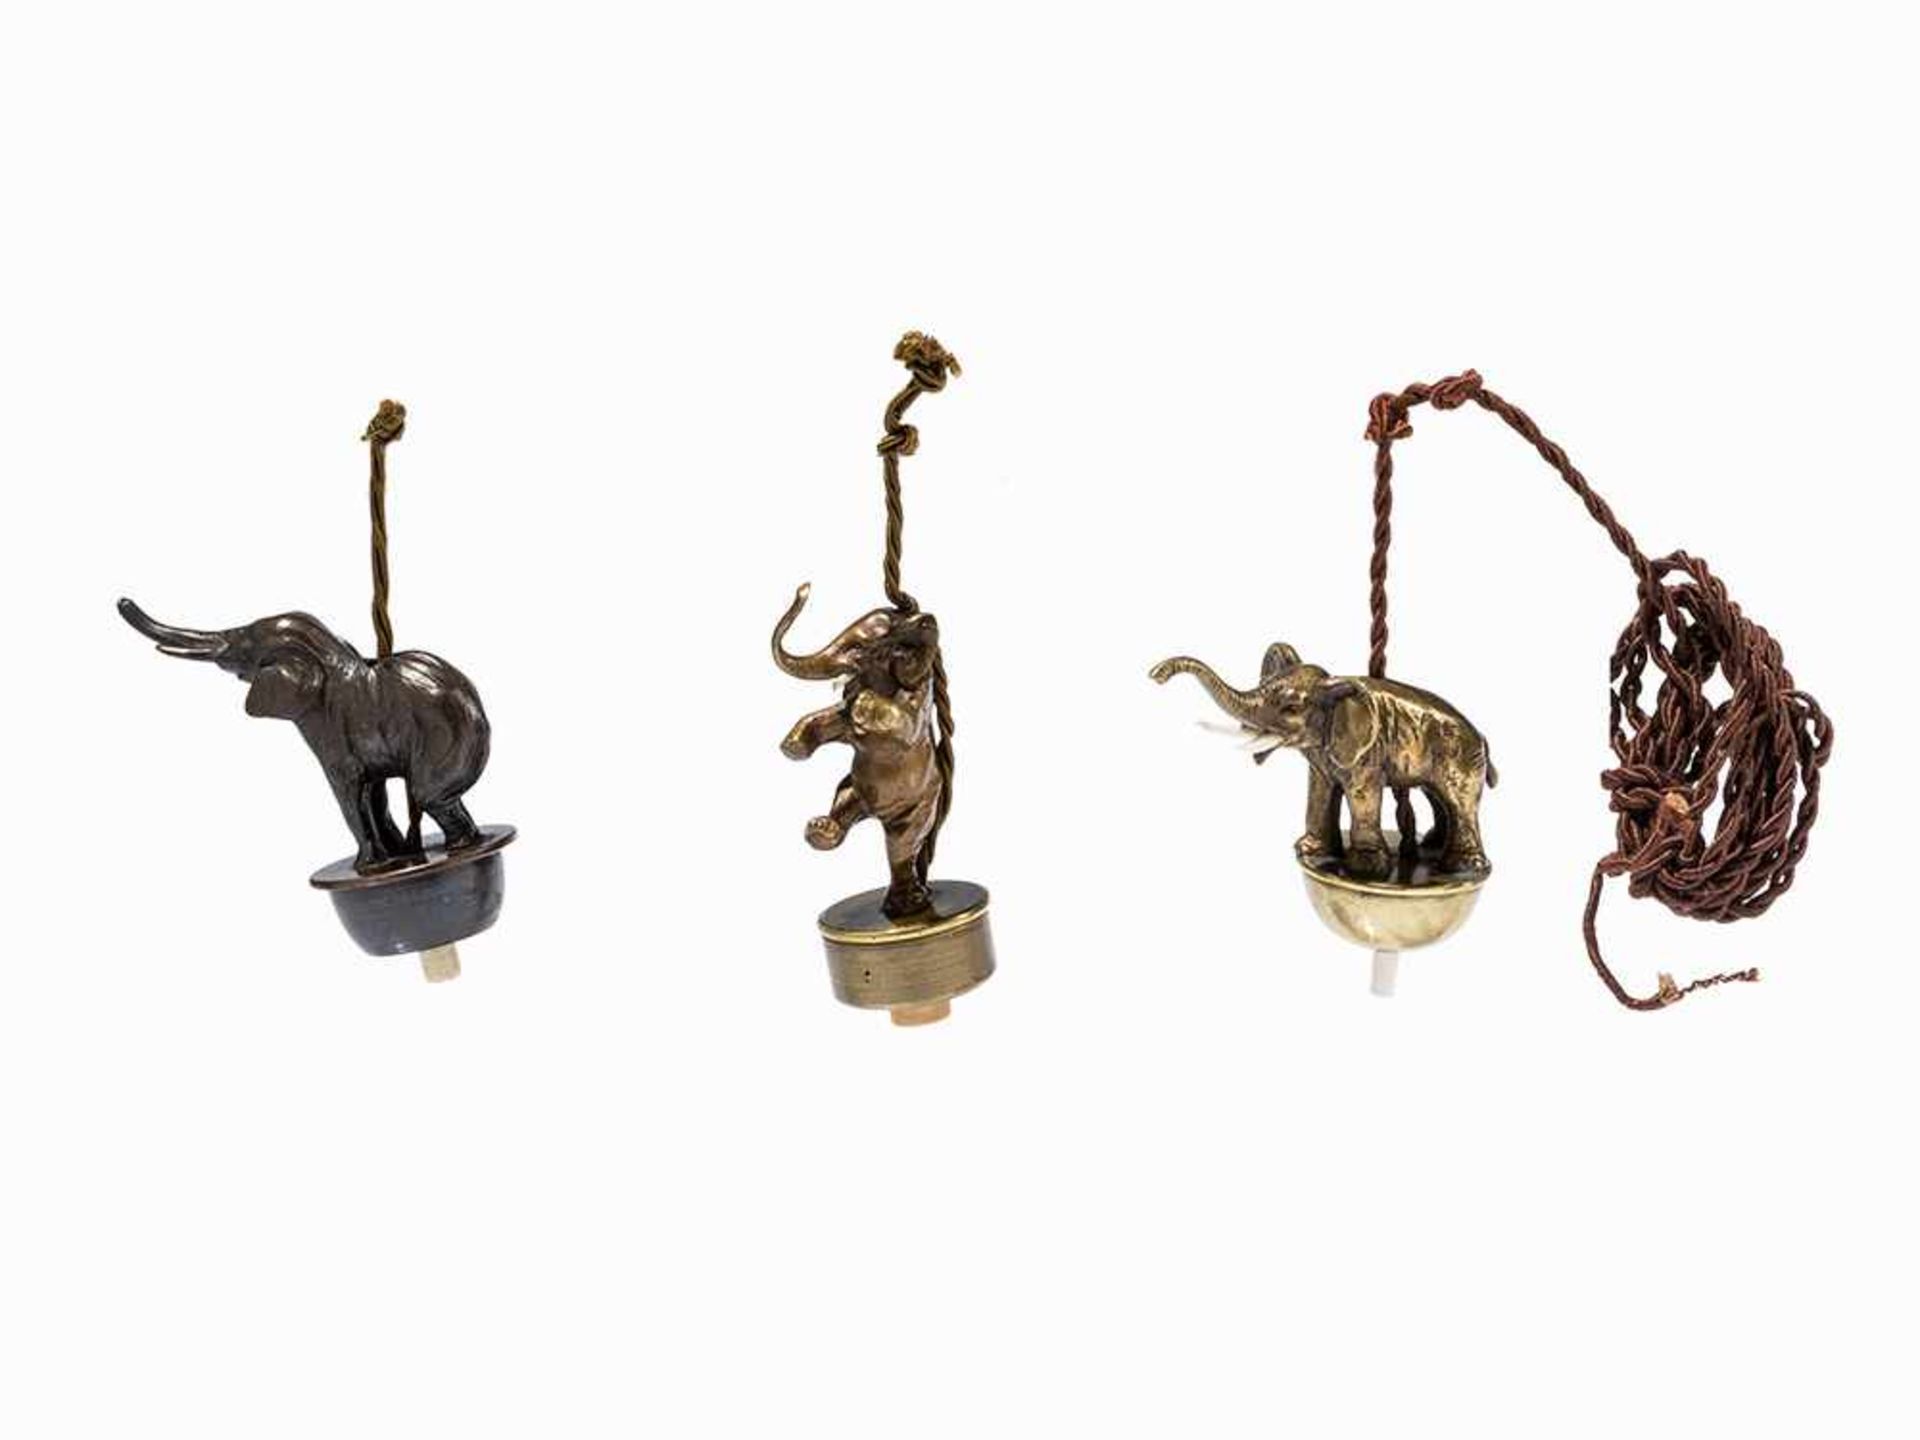 3 Hängeklingeln mit Elefantenfiguren, Frühes 20. Jh. Messing, Bronze, Elfenbein, Kunststoff.